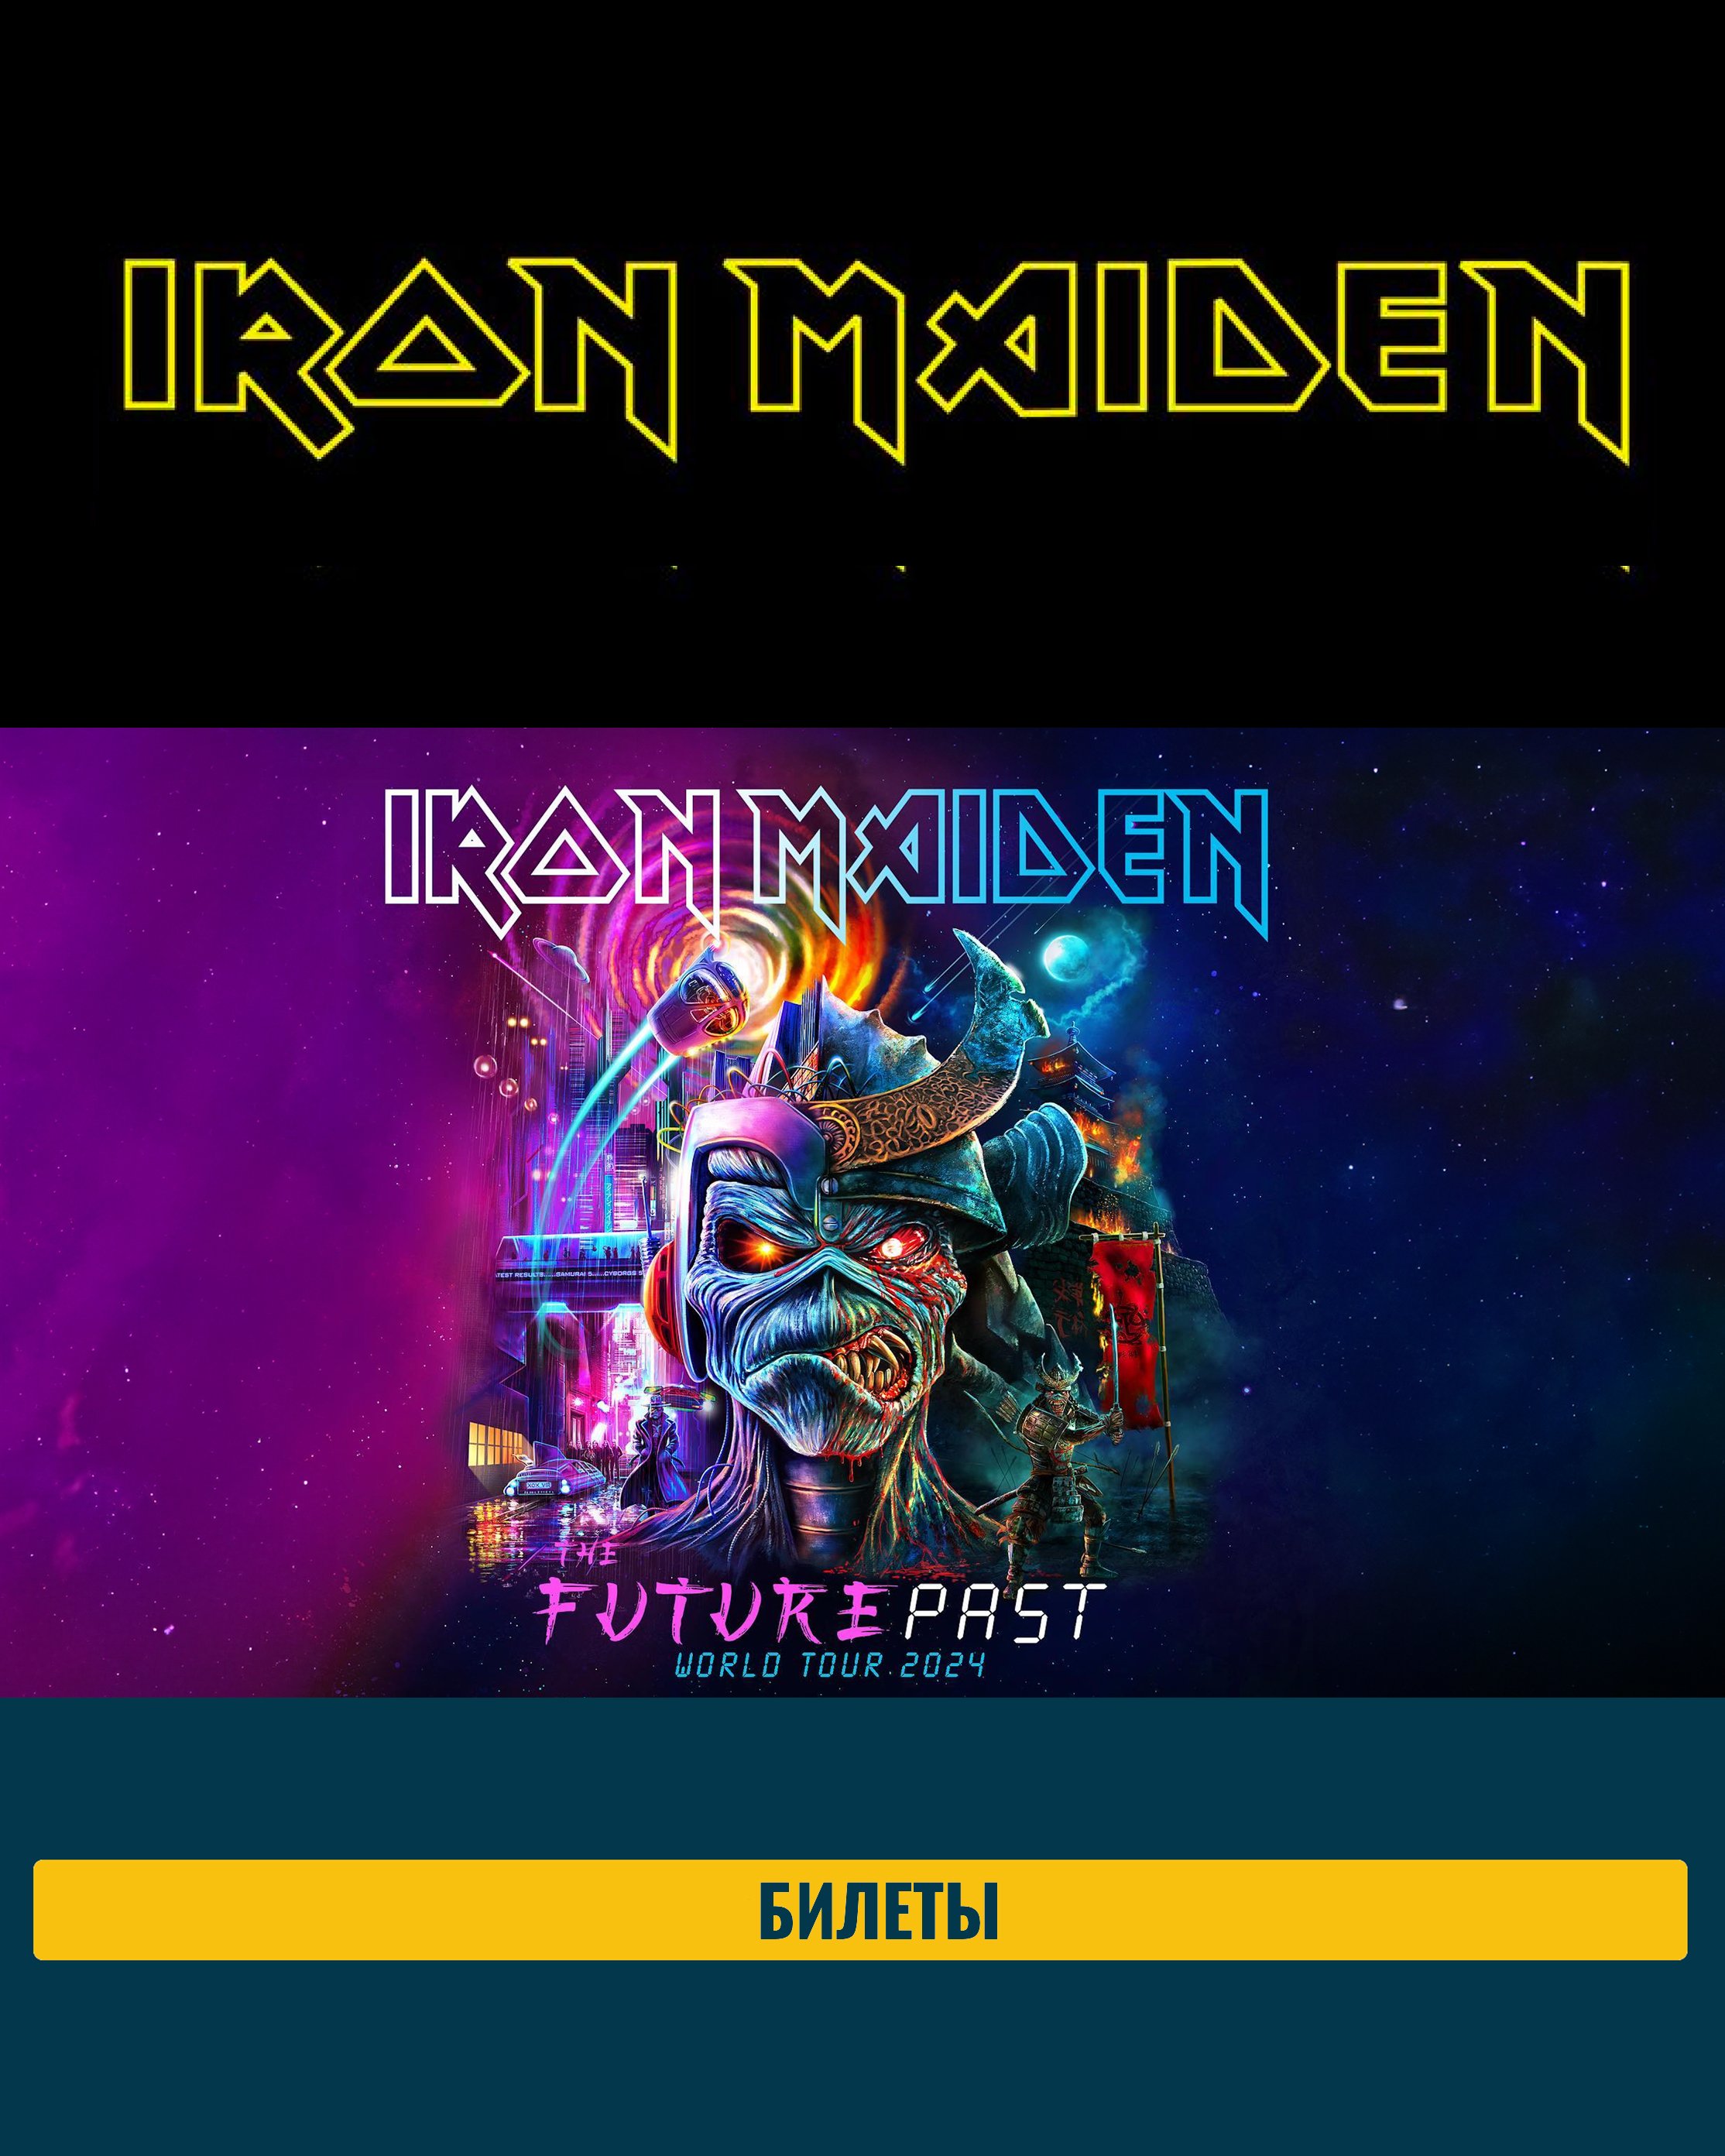 Концерт Iron Maiden в Нью-Йорке.jpg